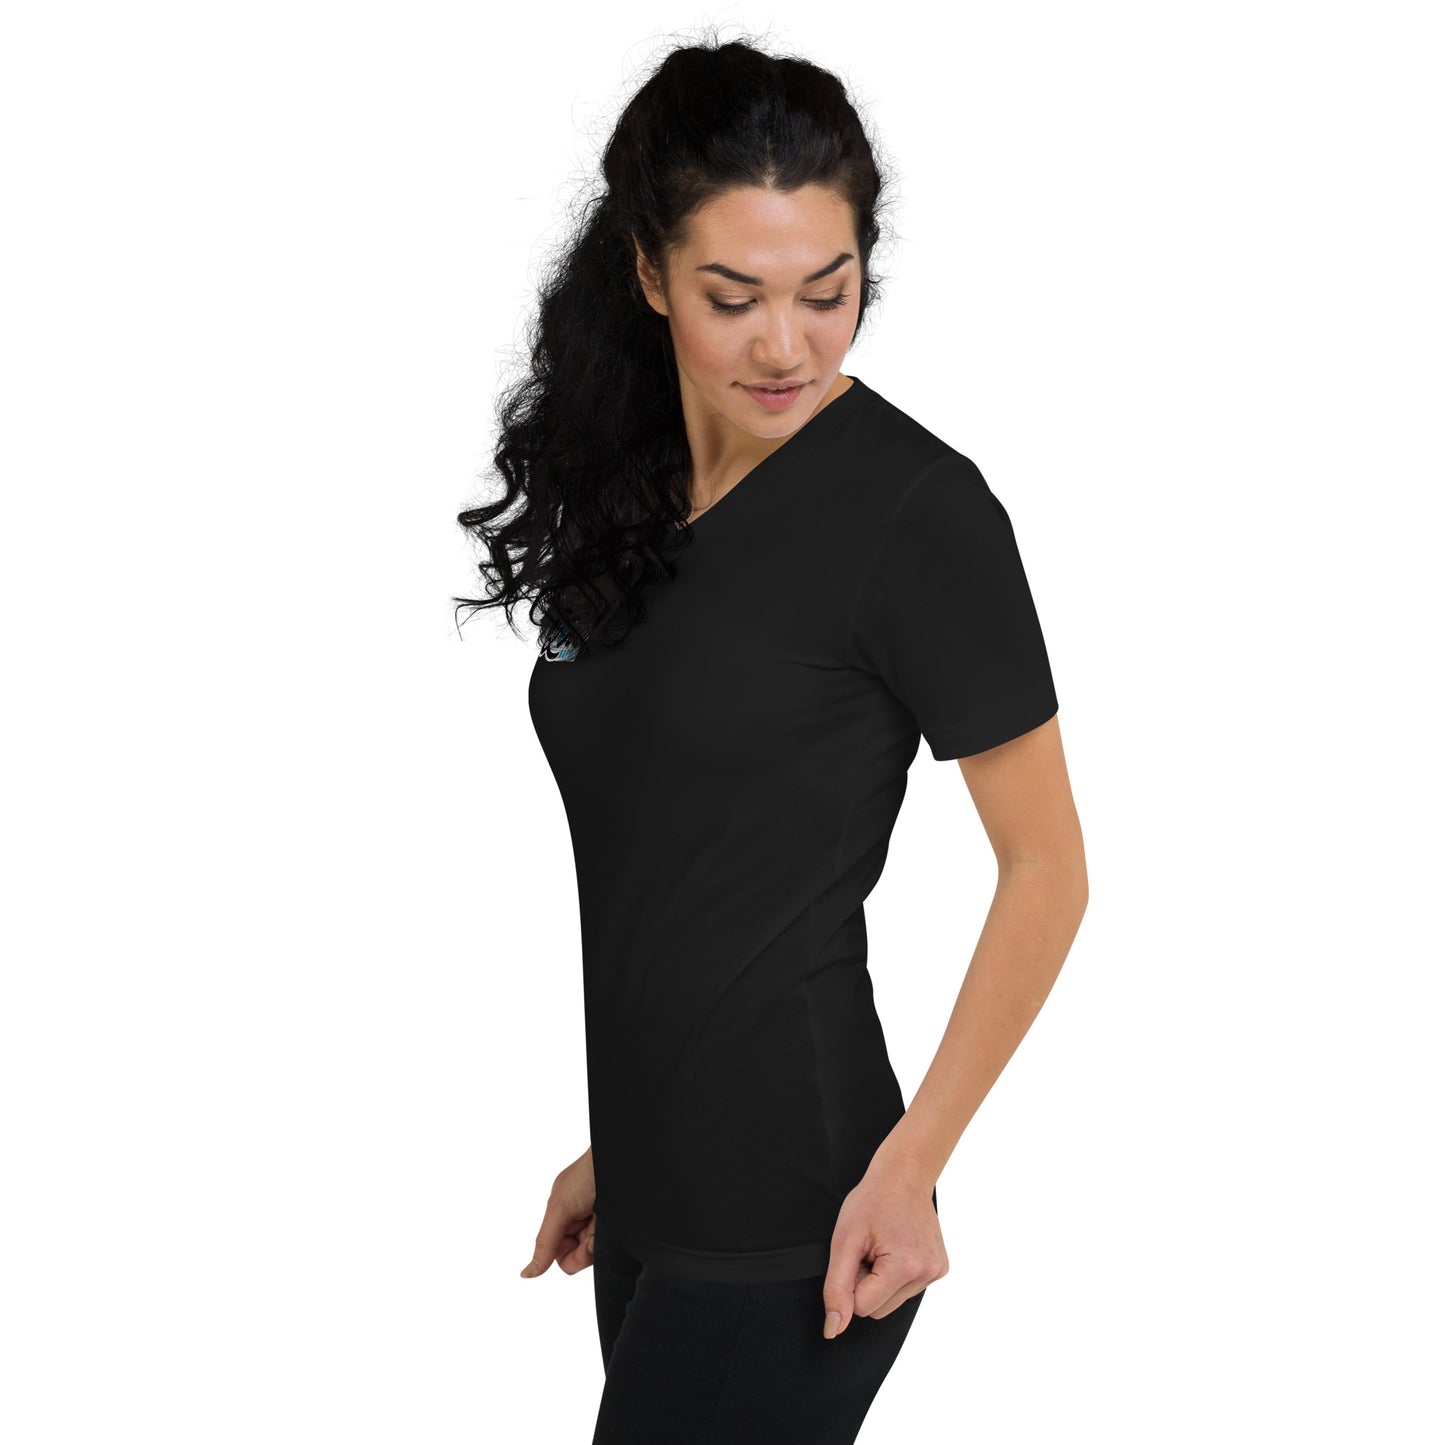 Kurzärmeliges Unisex-T-Shirt mit V-Ausschnitt - i love napoli - schwarz oder weiß